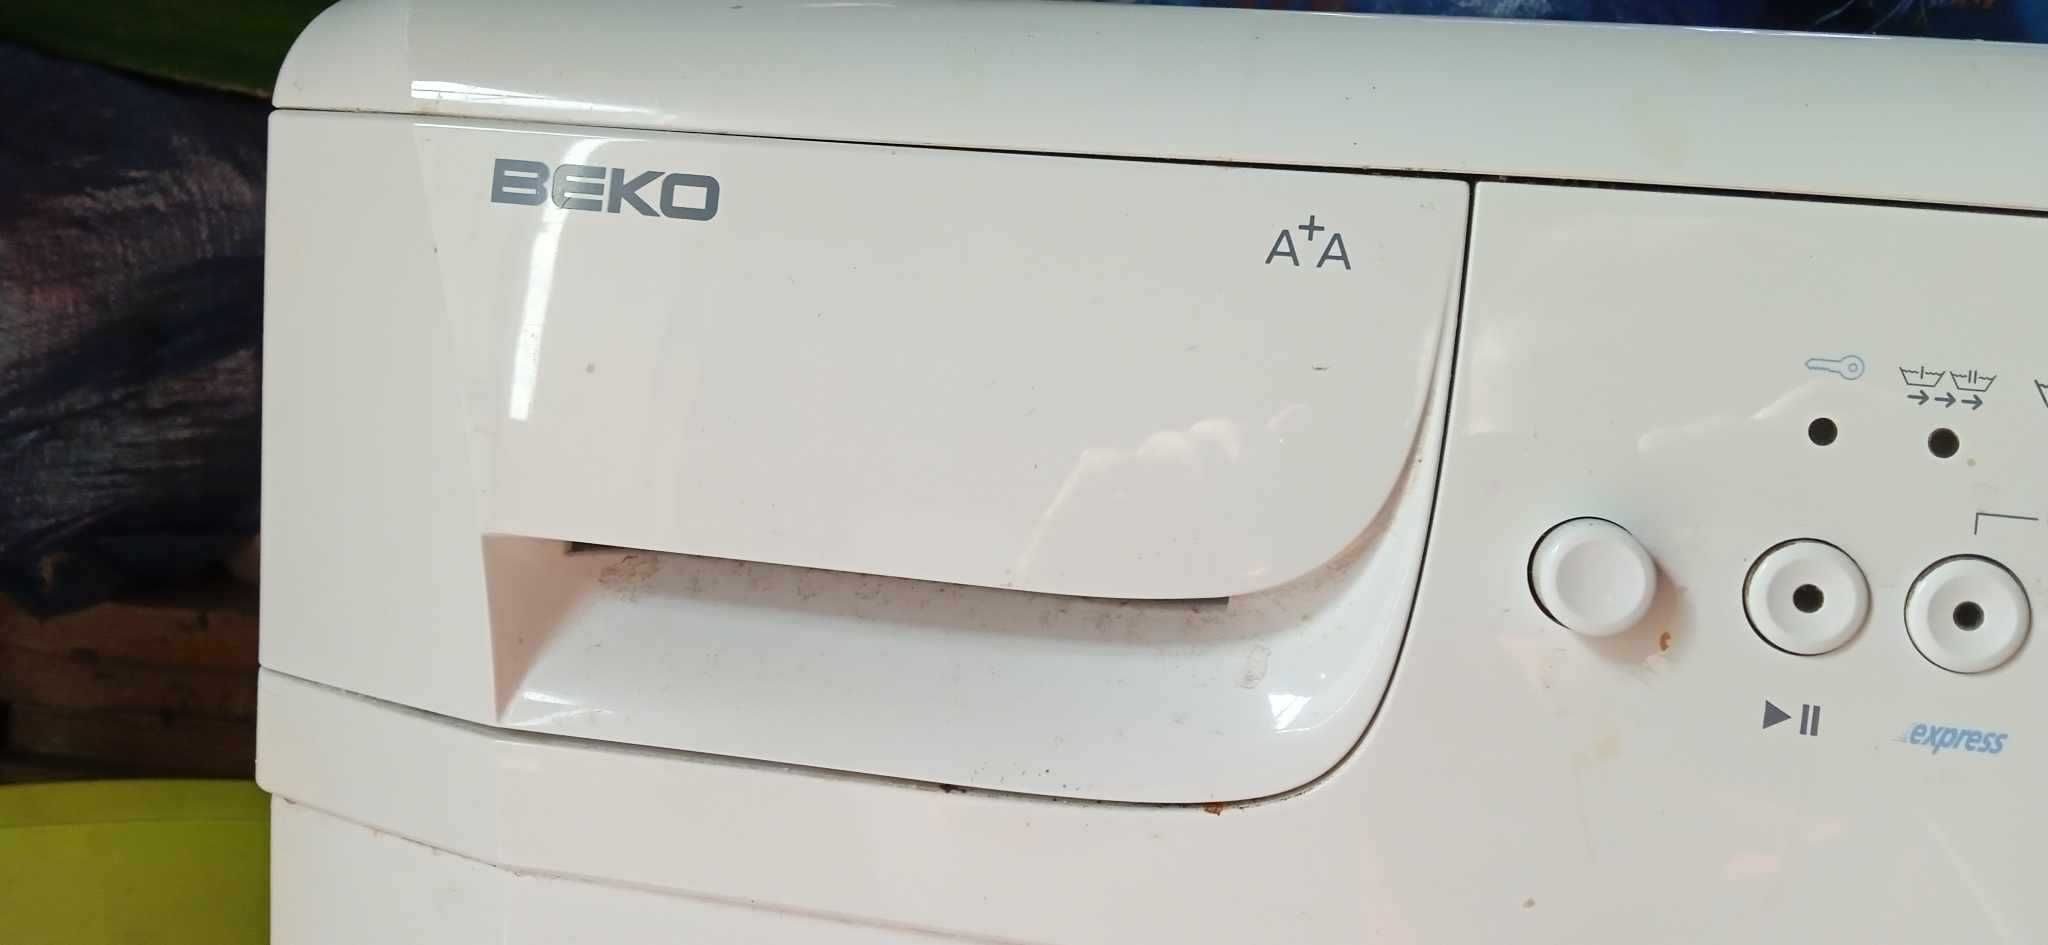 Pralka automatyczna BEKO A+A  5kg ( na cześci)